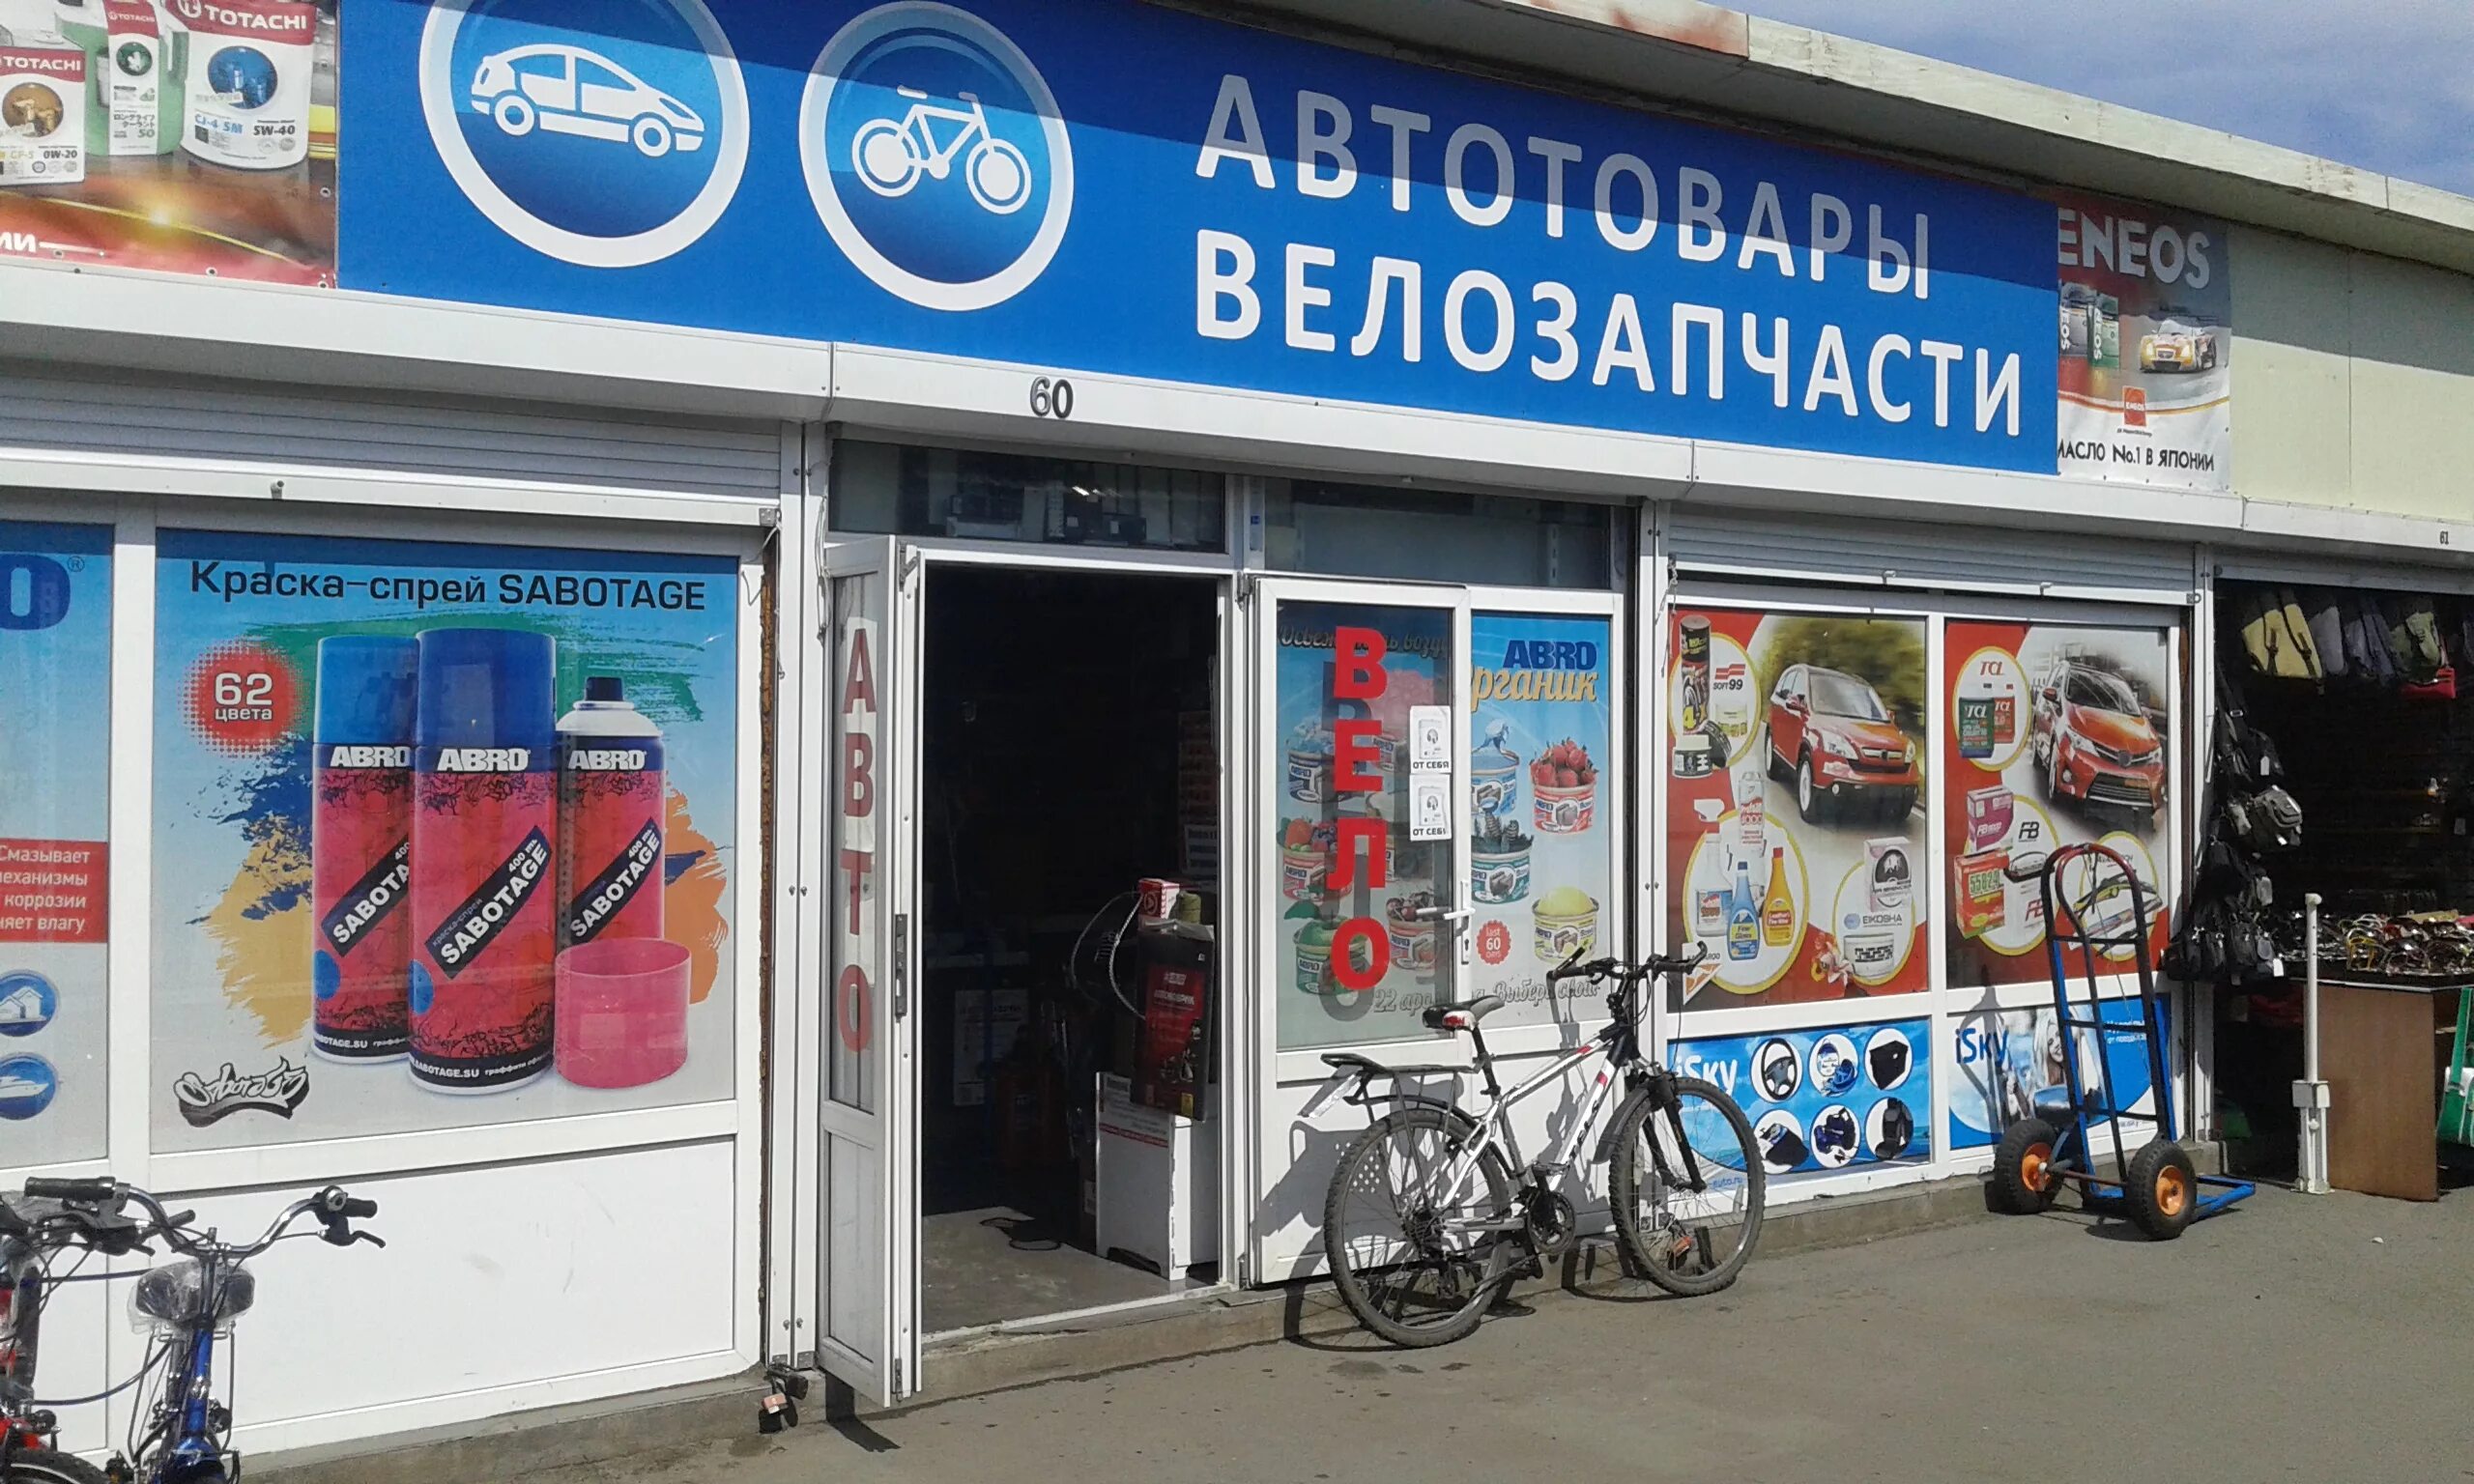 Магазин велосипедов рядом со мной. Реклама на магазин велозапчастей. Запчасти для велосипеда рядом со мной. Велозапчасти баннер. Веломагазин рядом со мной.